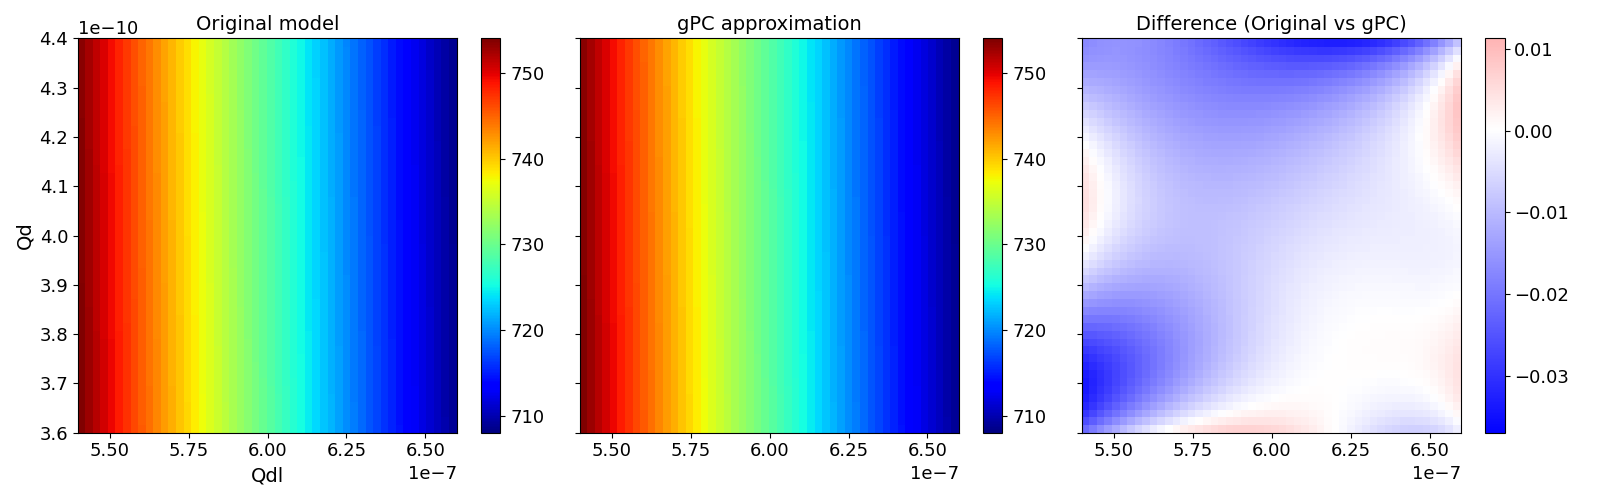 Original model, gPC approximation, Difference (Original vs gPC)